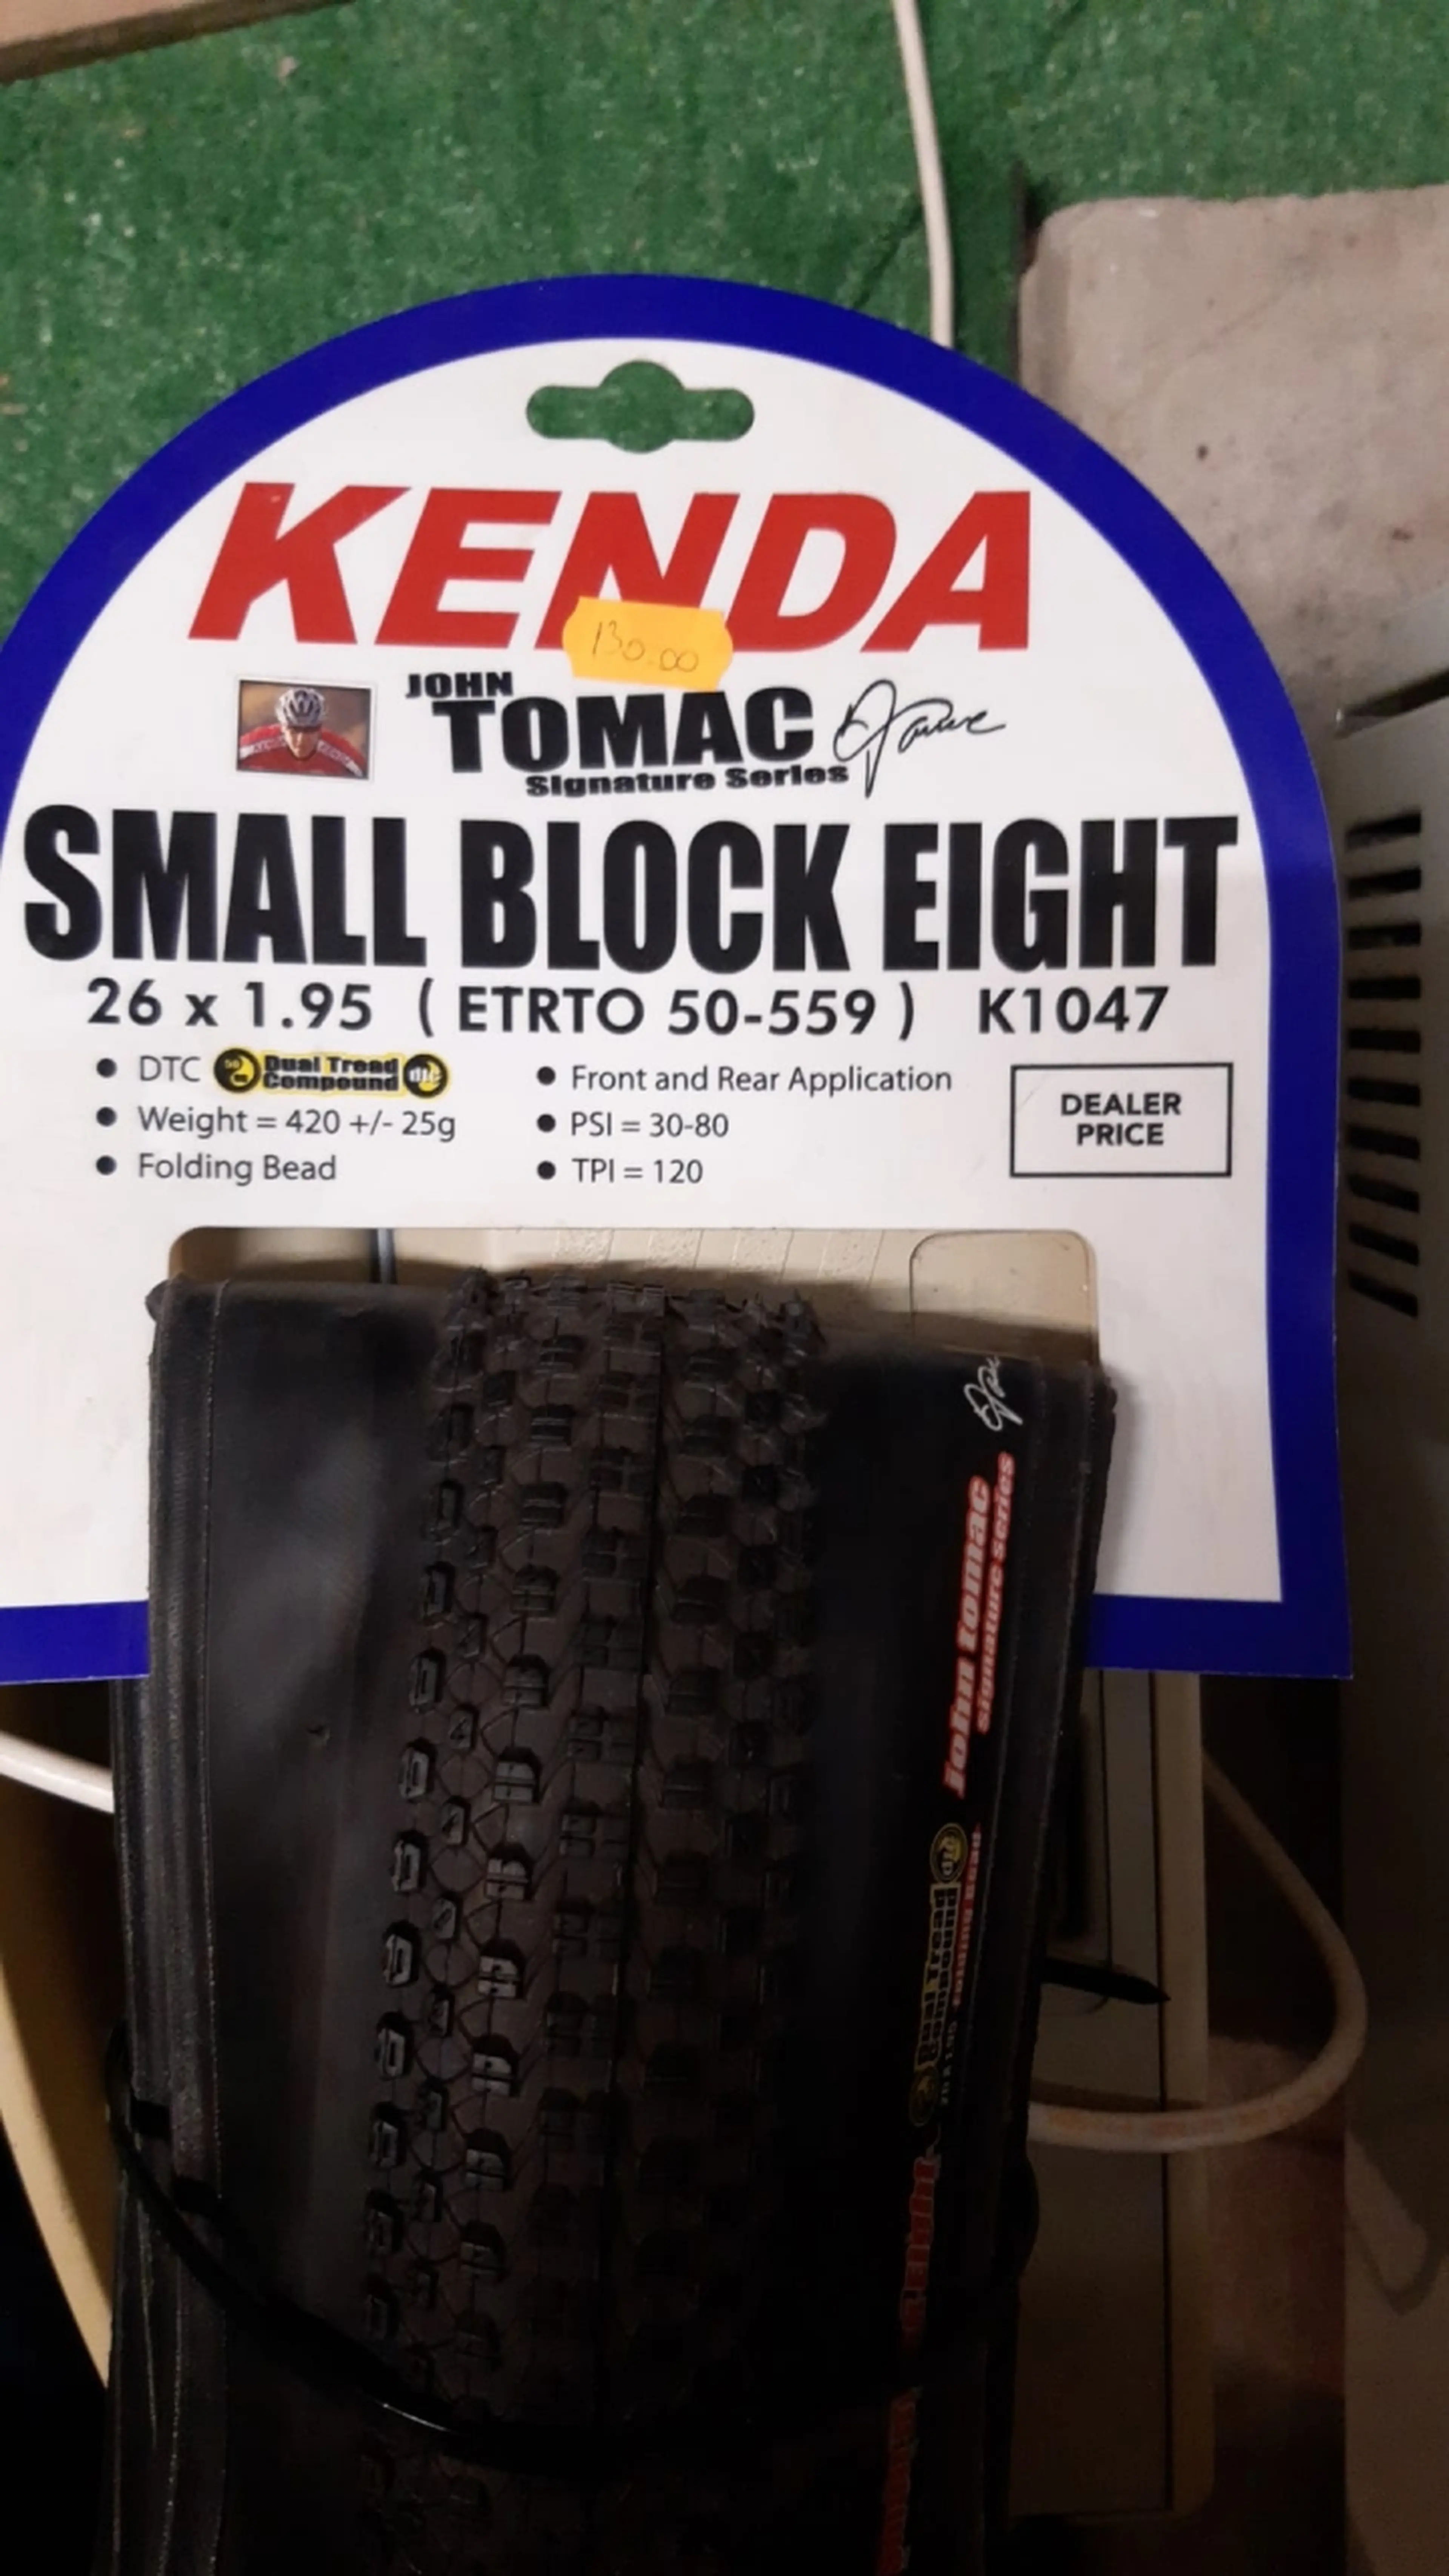 1. Kenda Small Block Eight Foldabil John Tomac Signature 26x1.95